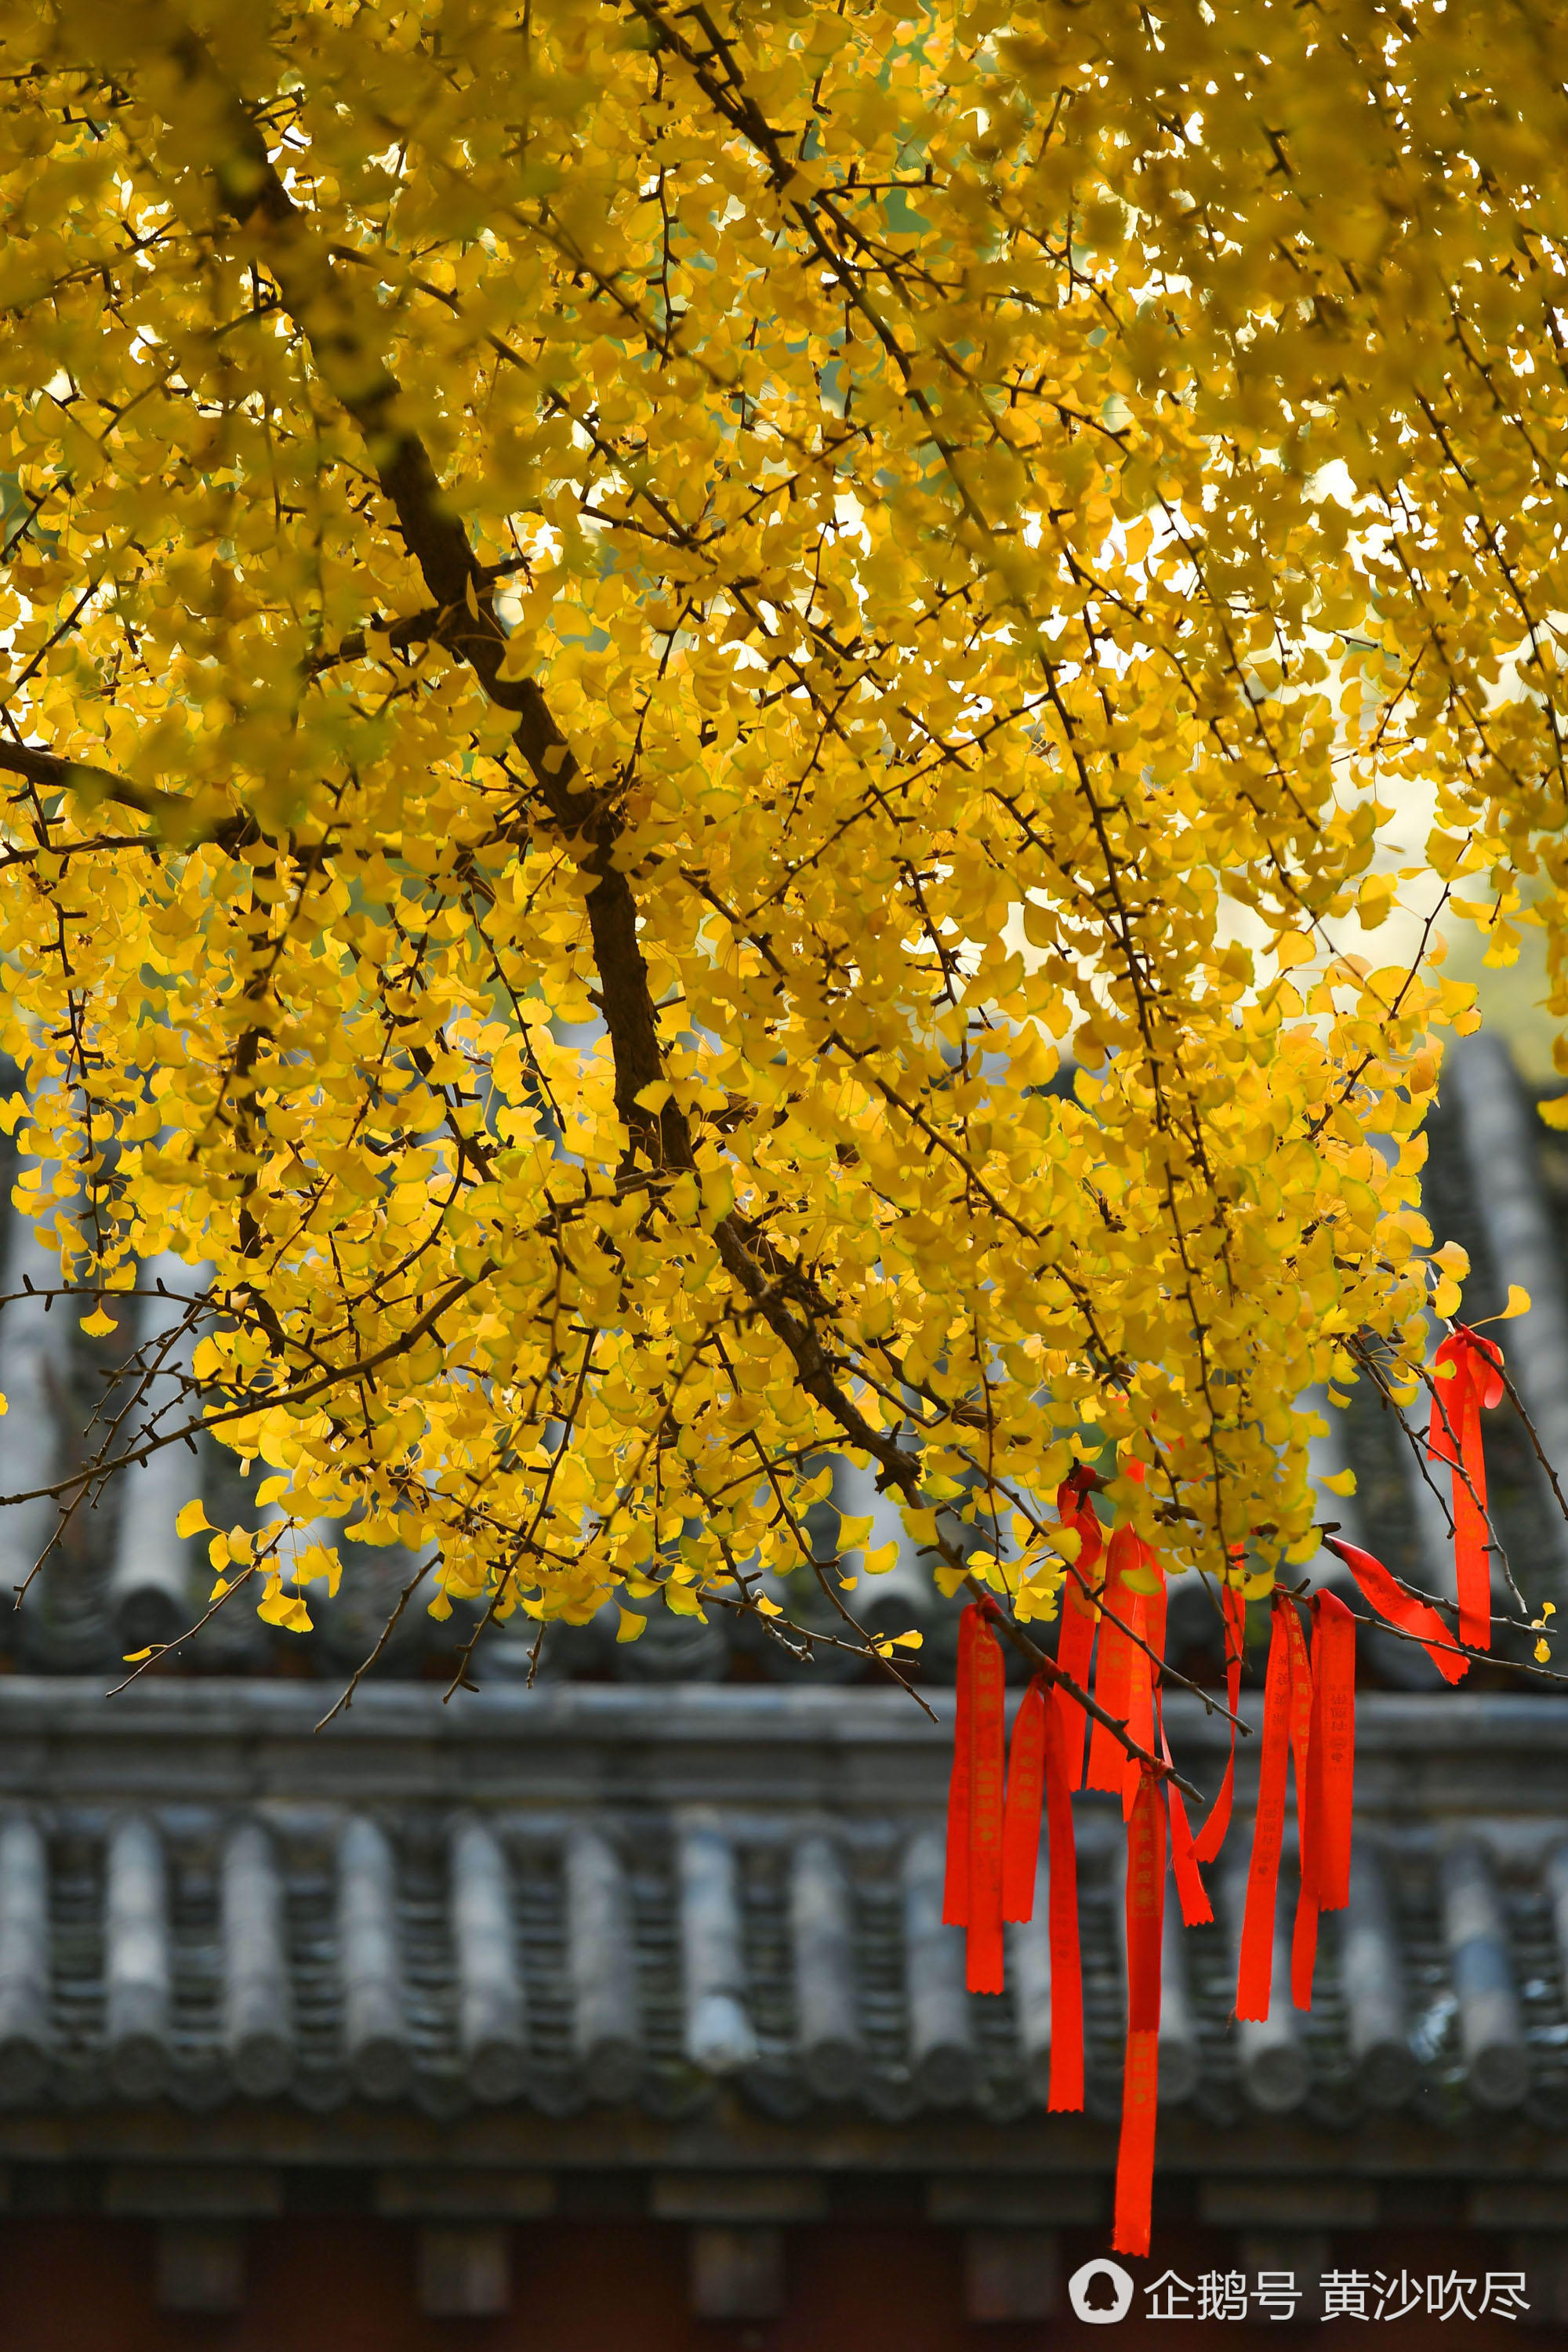 【美景】少林寺内1500岁银杏树"黄发飘零"美煞游人